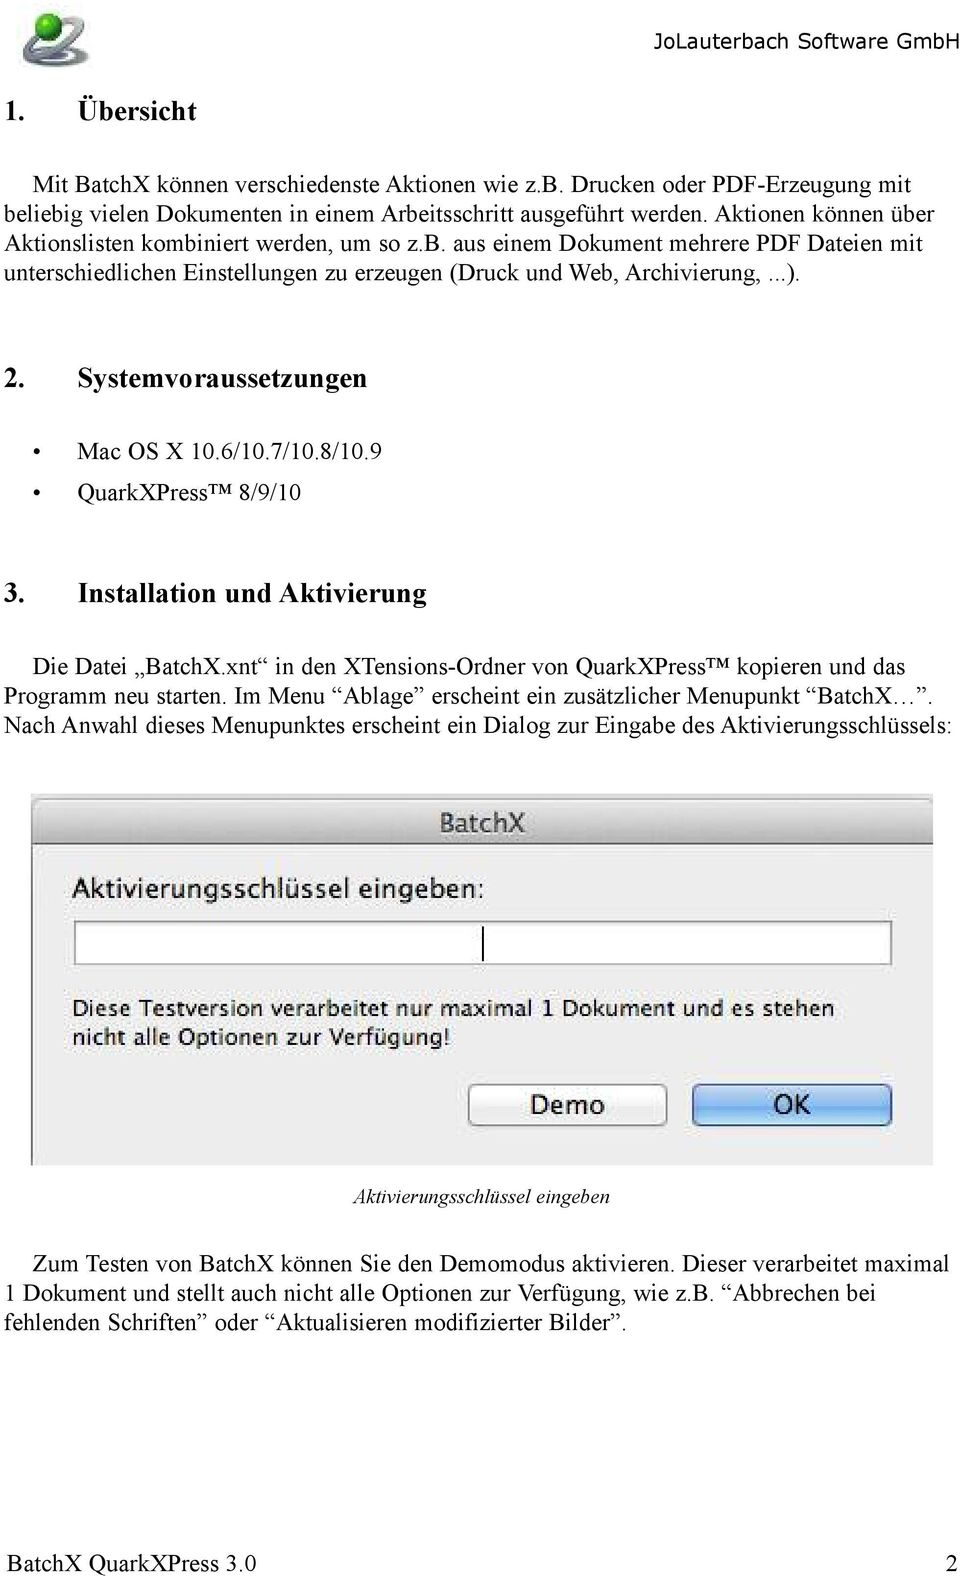 Systemvoraussetzungen Mac OS X 10.6/10.7/10.8/10.9 QuarkXPress 8/9/10 3. Installation und Aktivierung Die Datei BatchX.